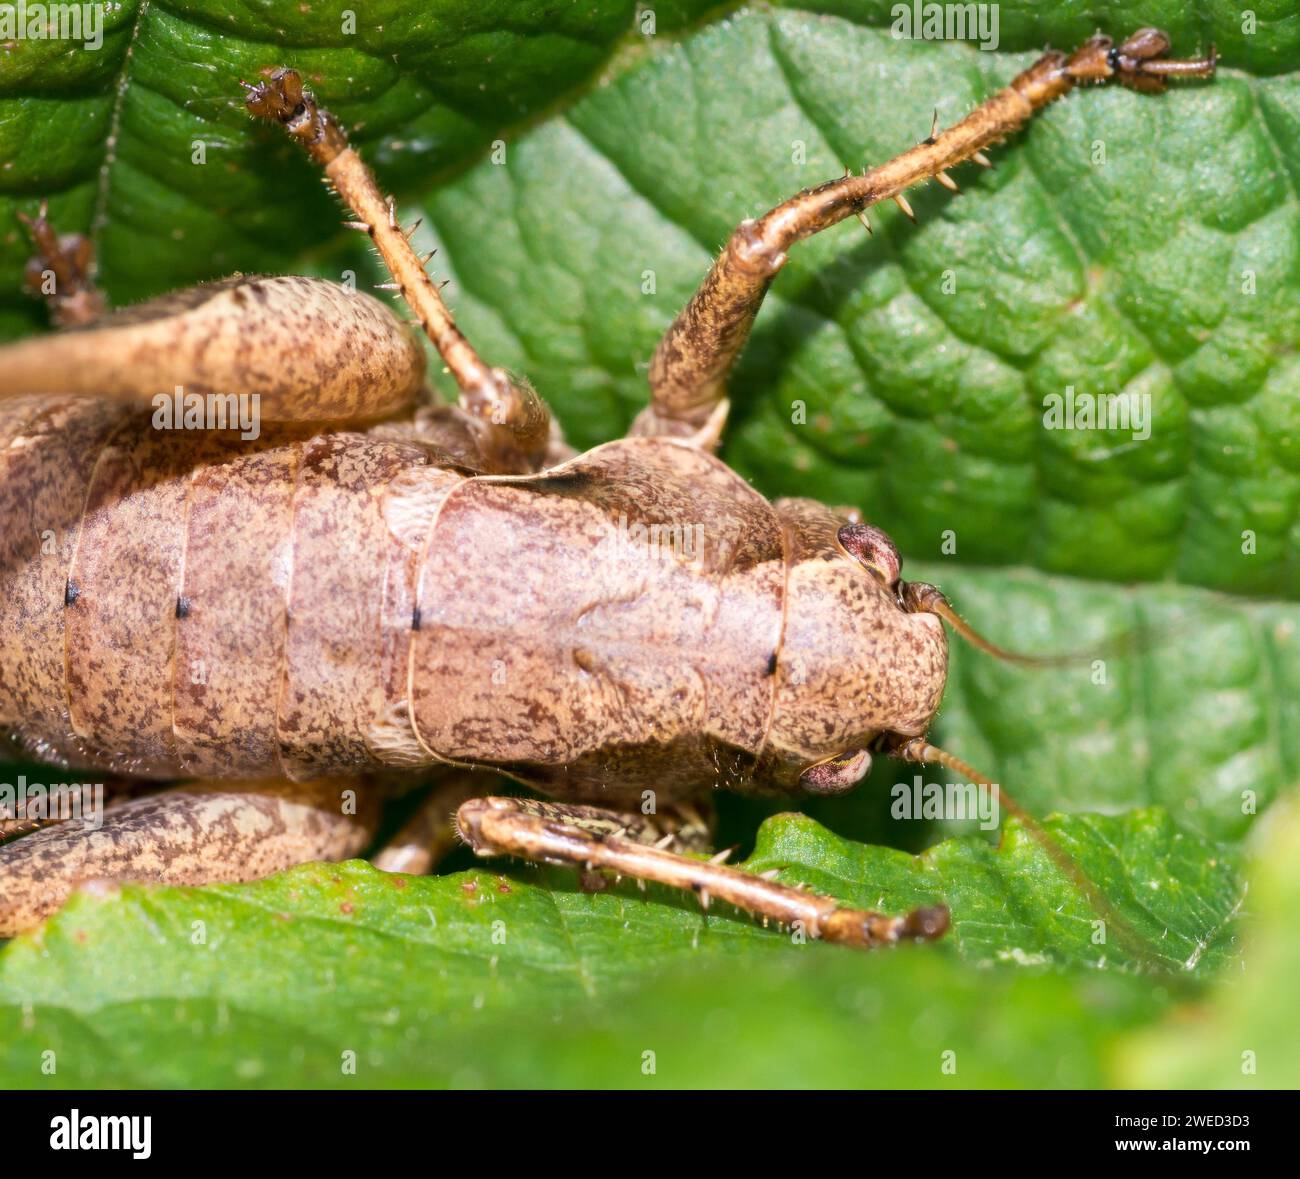 Dark bush-cricket (Pholidoptera griseoaptera) or common bush cricket, female, sitting on bramble leaf (Rubus sect. Rubus), close-up, detail shot Stock Photo